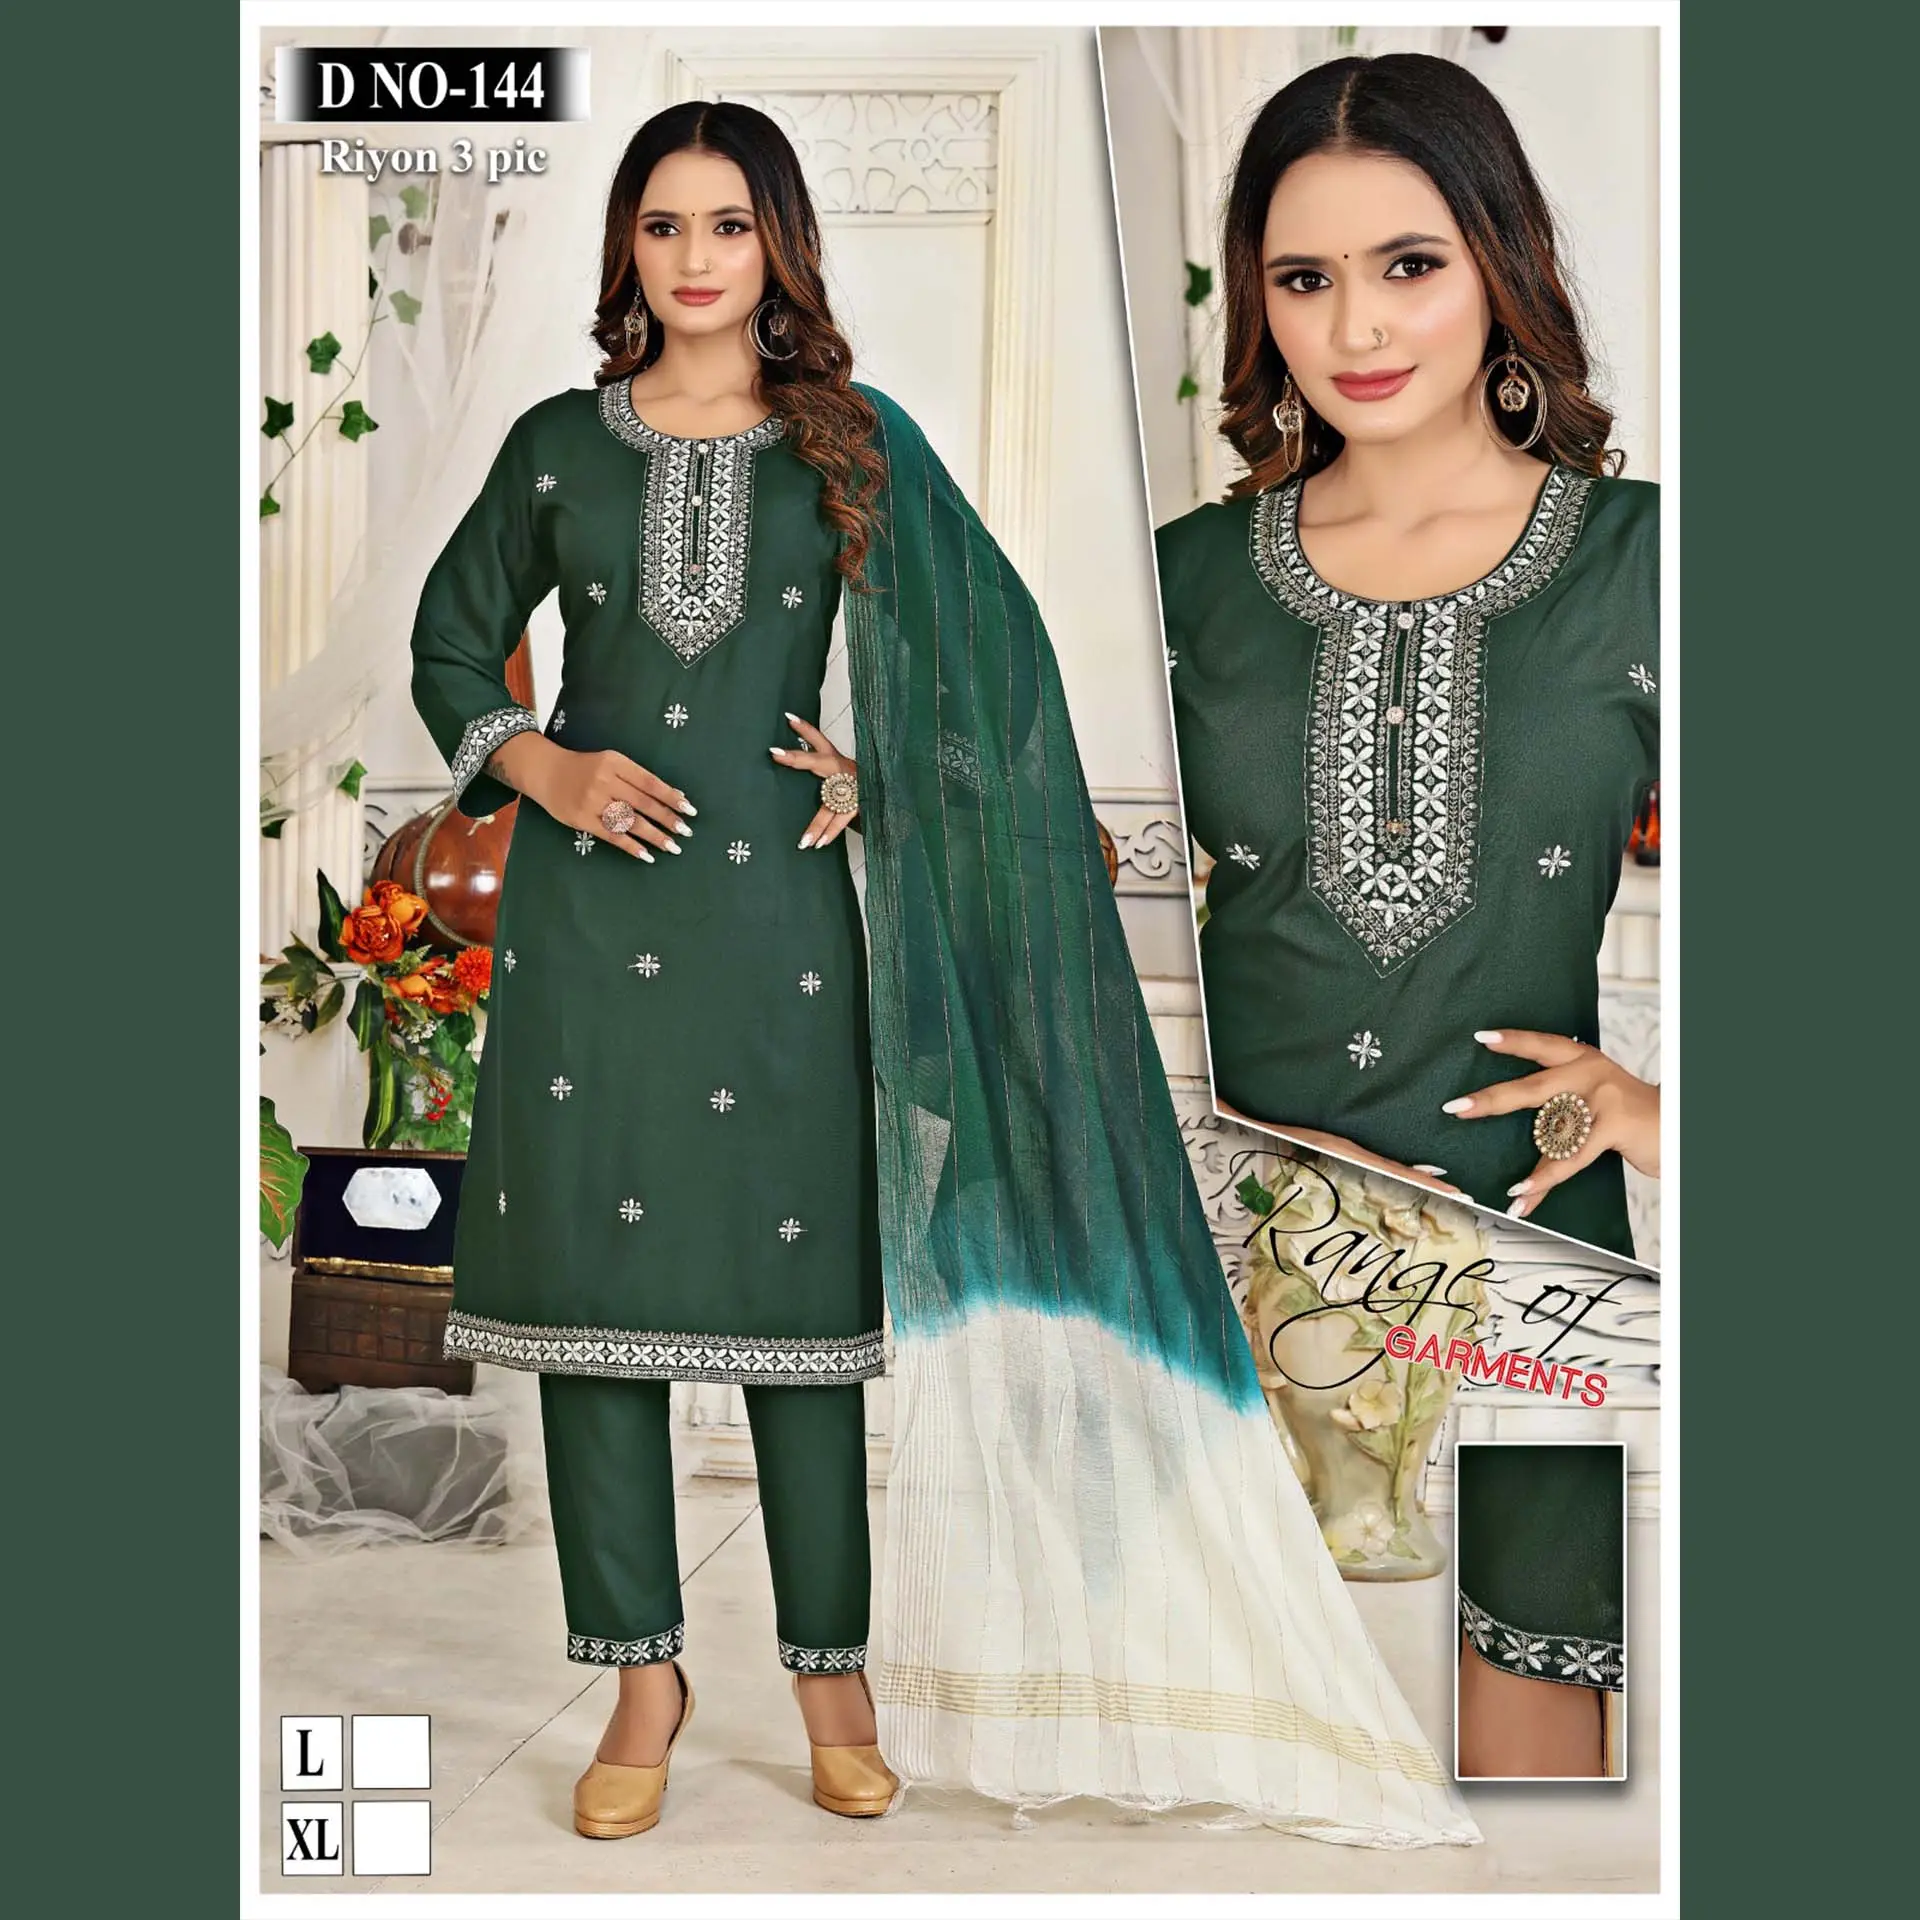 Hochgefragte hochwertige Kurti-Hose & Dupatta-Set modische indische und pakistanische Kleidung bedruckte Stickereiarbeit Großhandel Stil